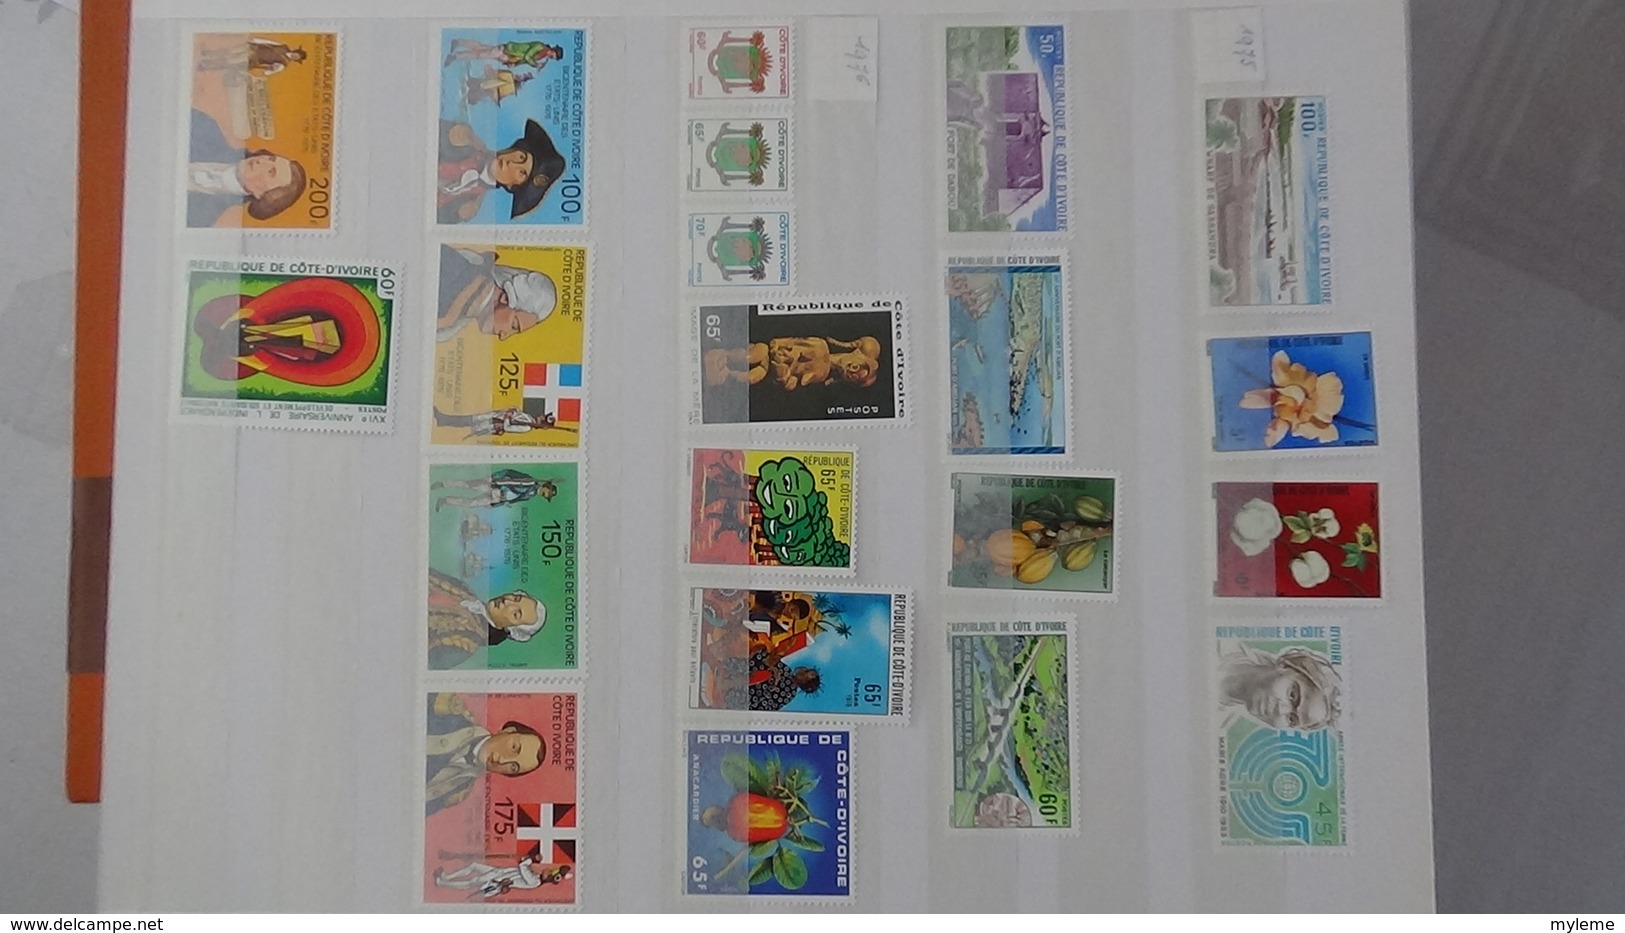 D13 Dispersion d'une très grosse collection de timbres et blocs ** d'Afrique dont Congo et Côte d'Ivoire. Voir commentai